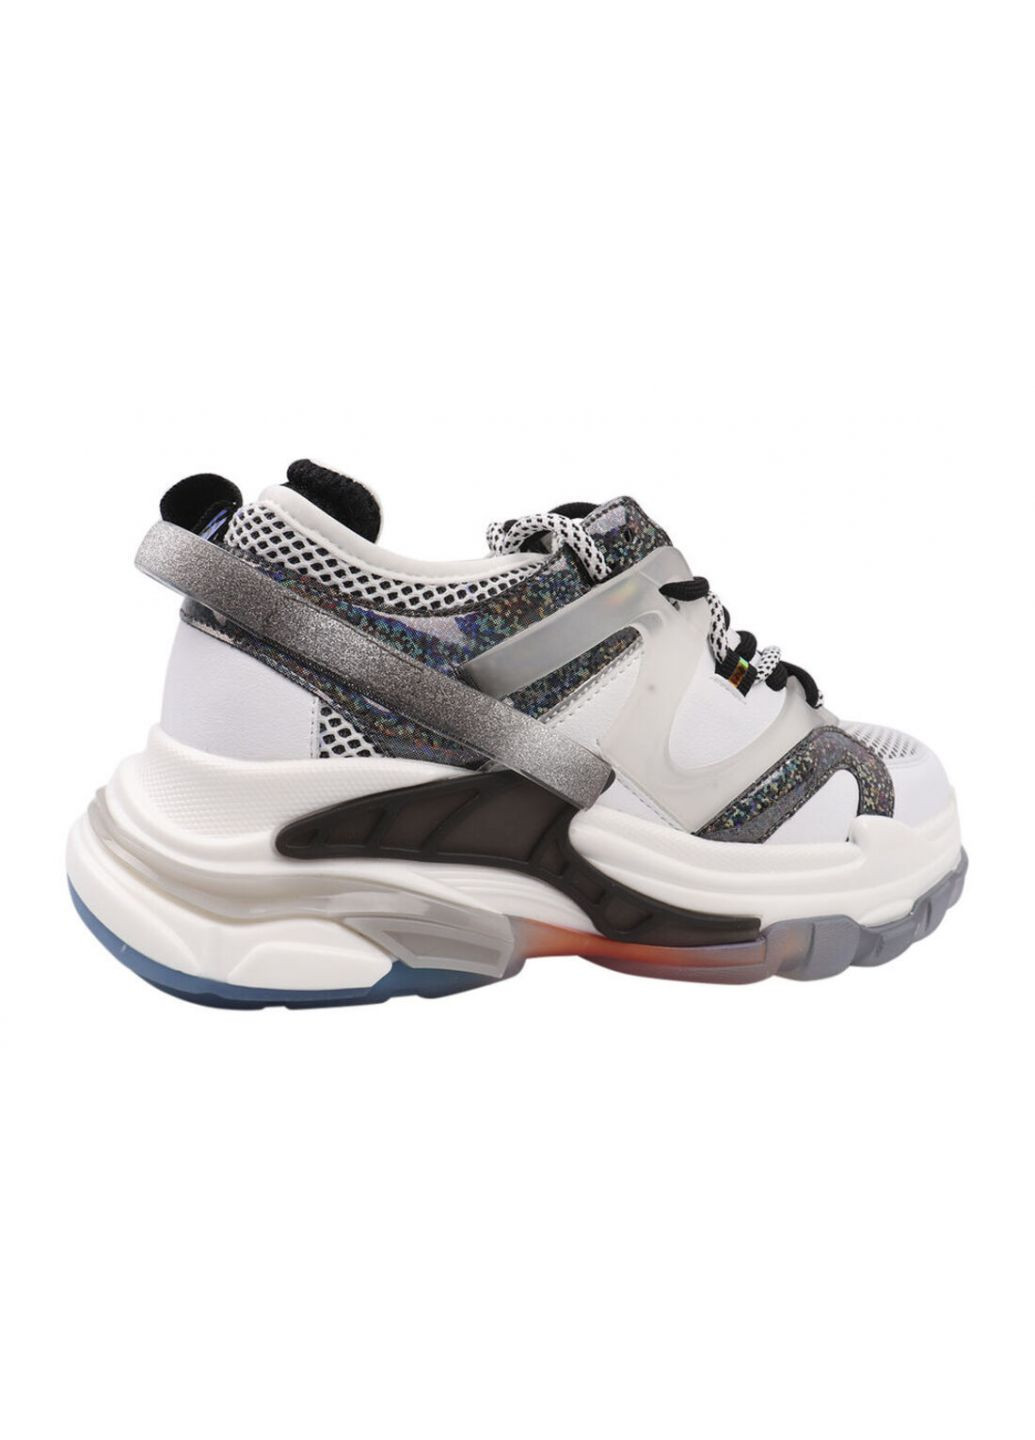 Білі кросівки жіночі з натуральної шкіри, на платформі, білі, Lifexpert 577-21DK